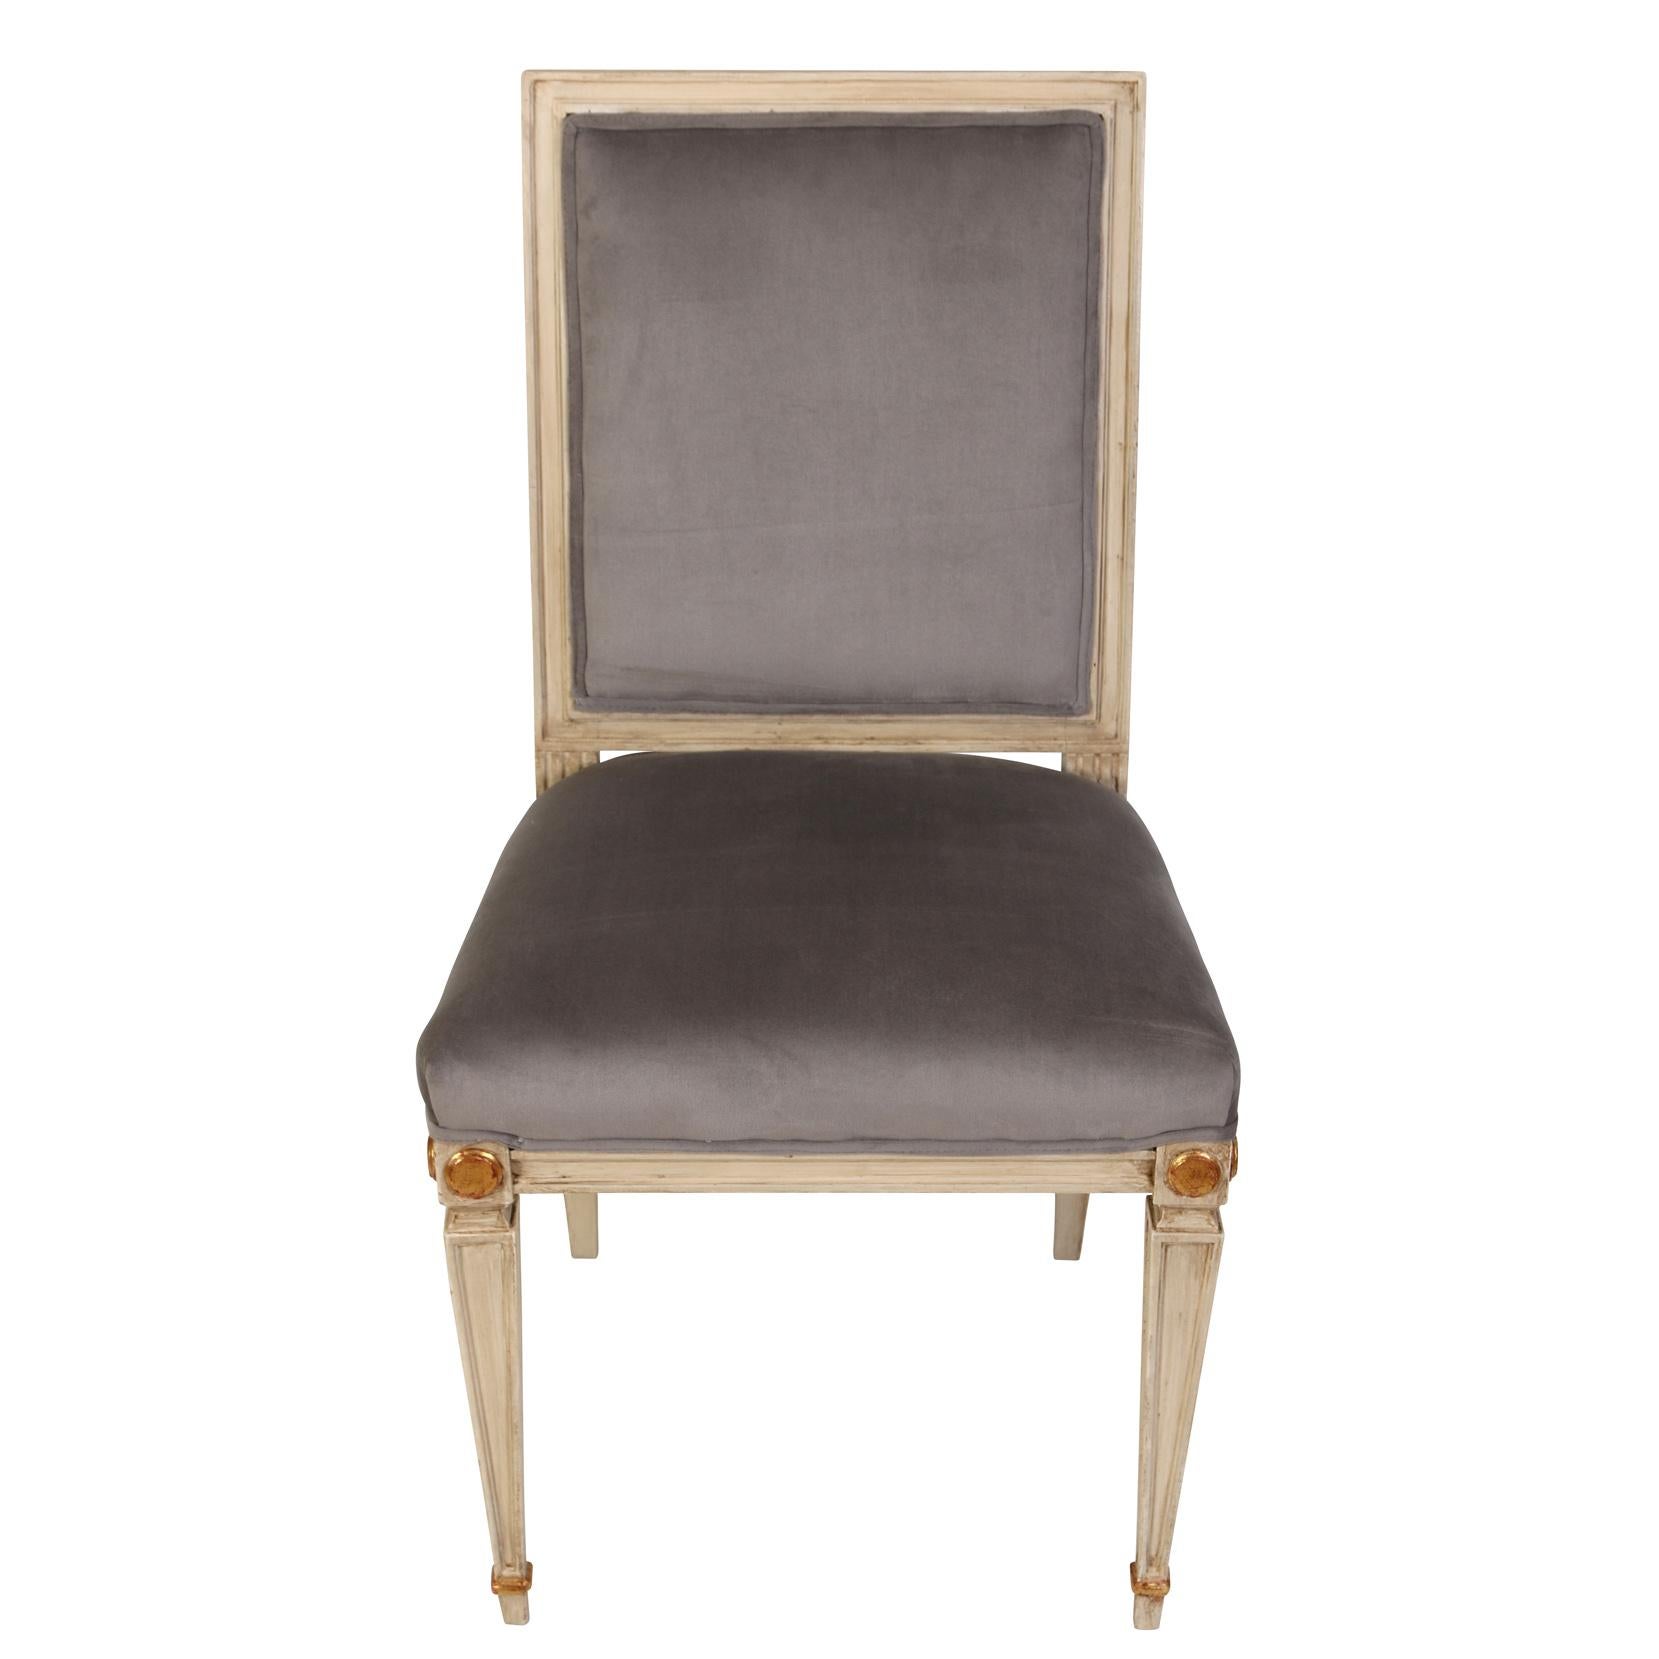 Wir lieben die schlichte Eleganz dieser Esszimmerstühle im Stil Louis XVI. Die hellgrau lackierten Stühle haben eine quadratische Rückenlehne und Sitzfläche. Die Beine sind quadratisch und verjüngt mit Messing-Sabots und der Rahmen weist dezente